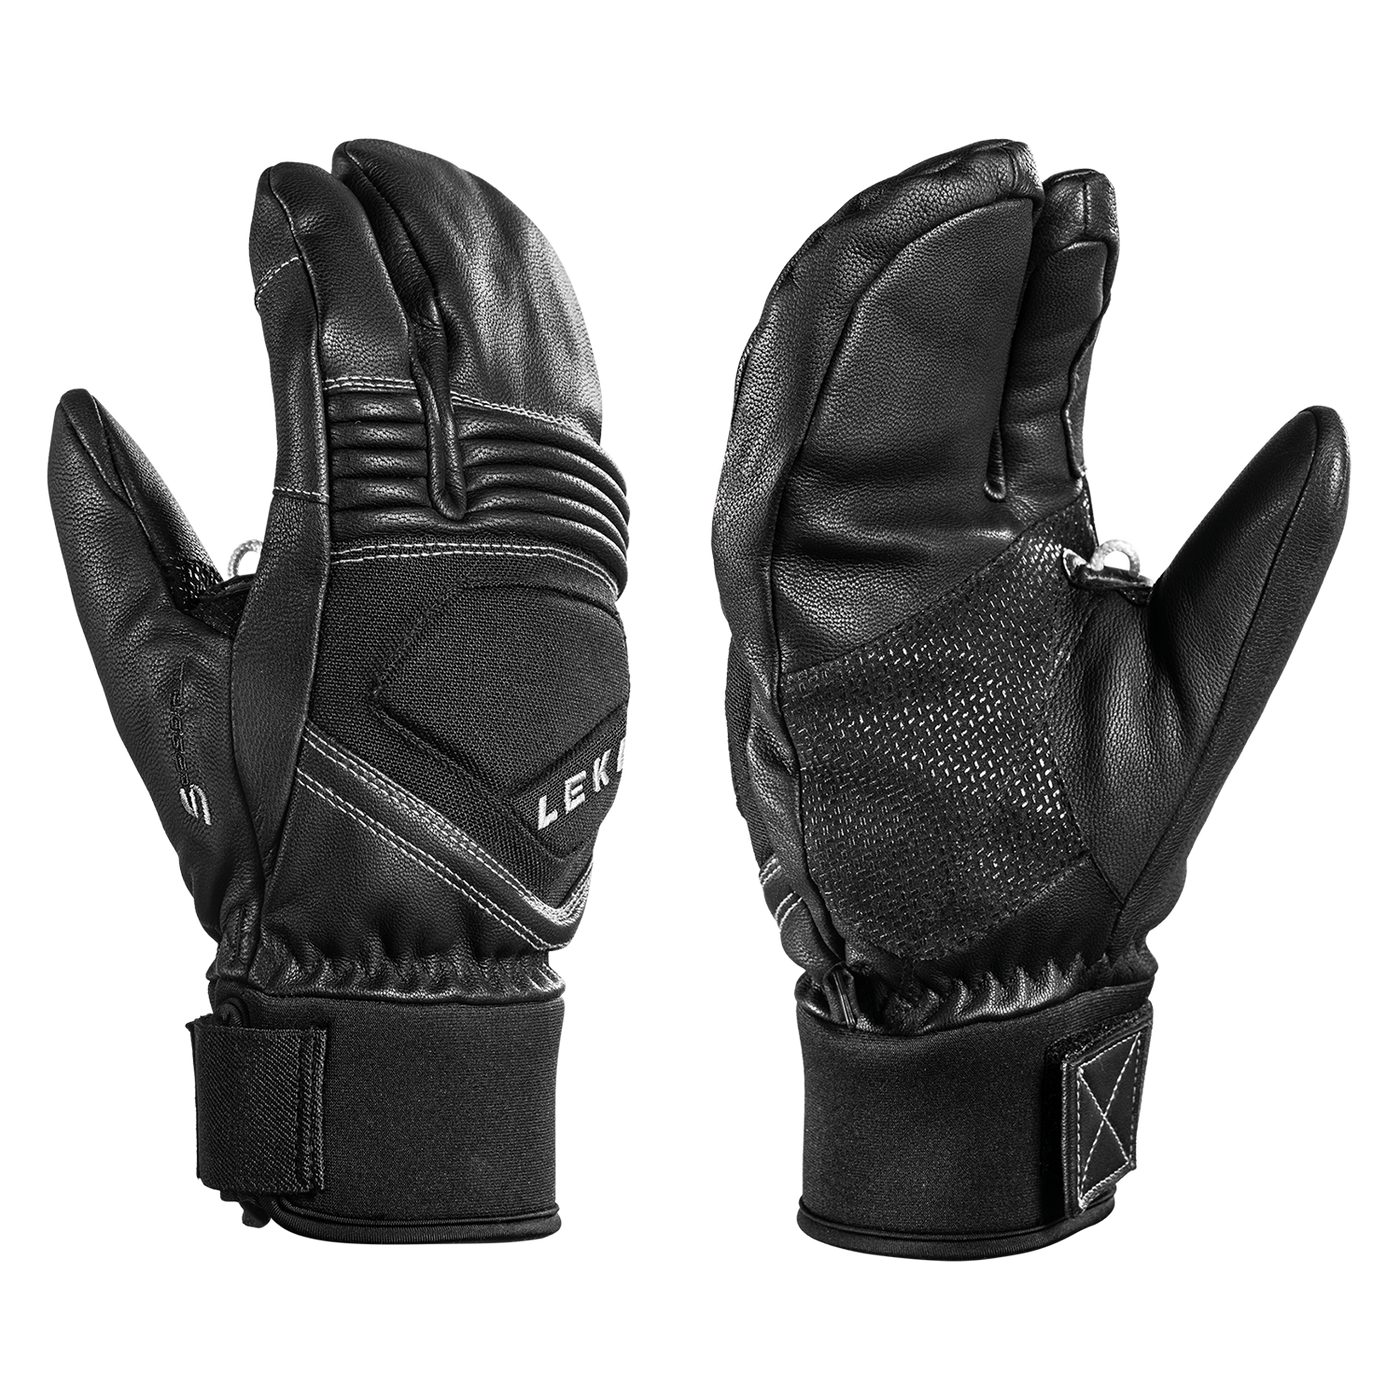 Leki Copper S Lobster Gloves Black APPAREL Leki 7  